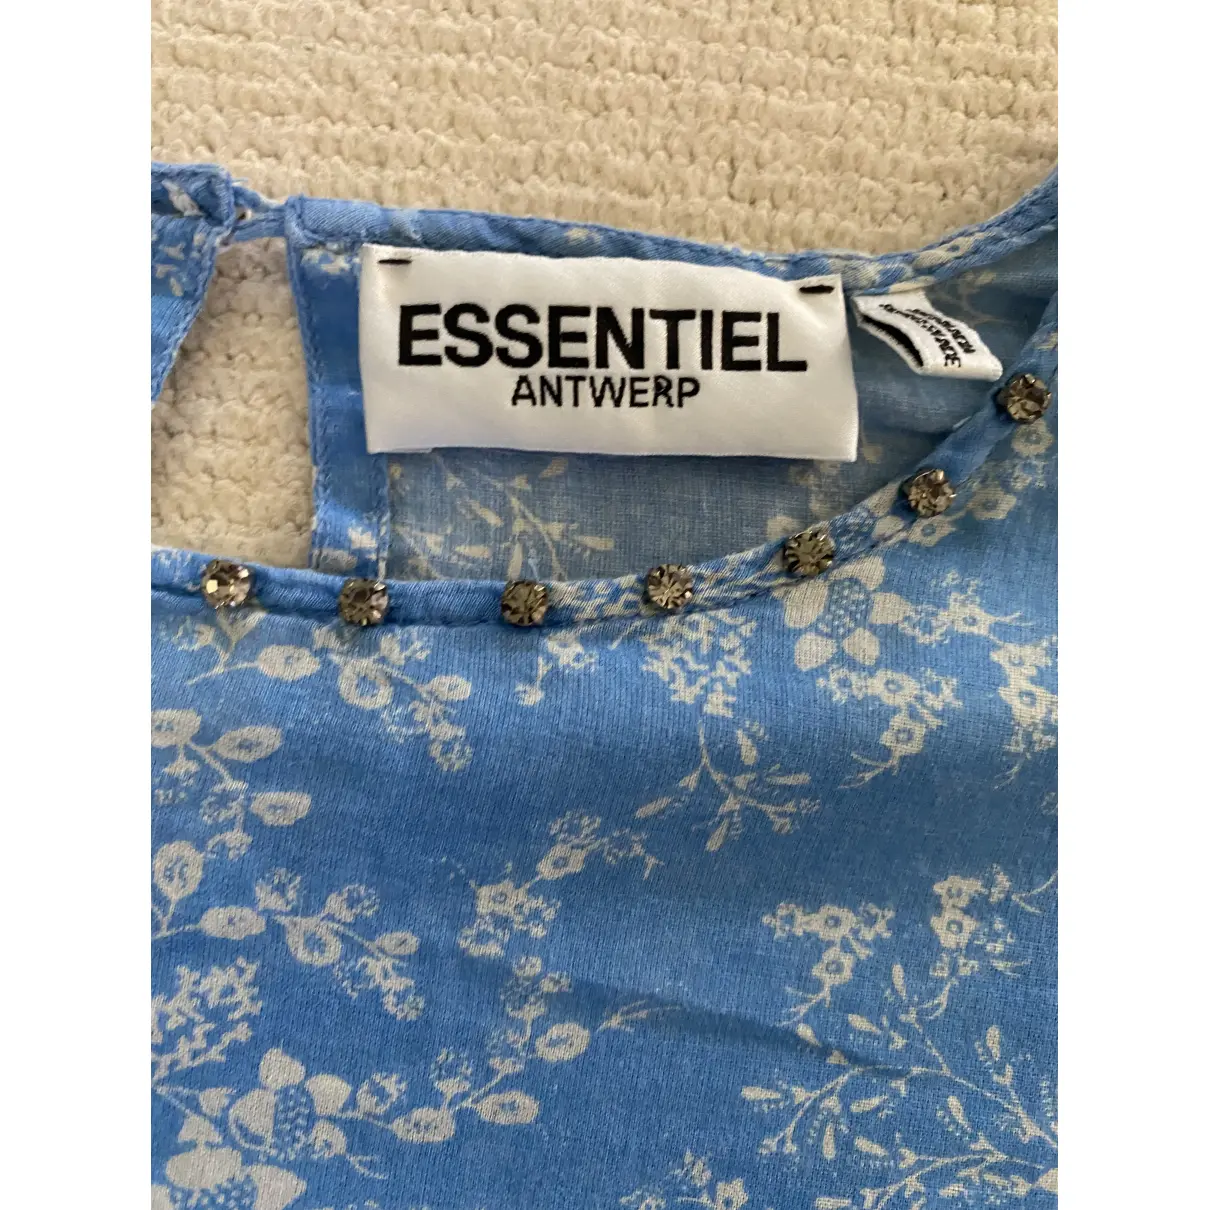 Buy Essentiel Antwerp Blue Cotton Top online